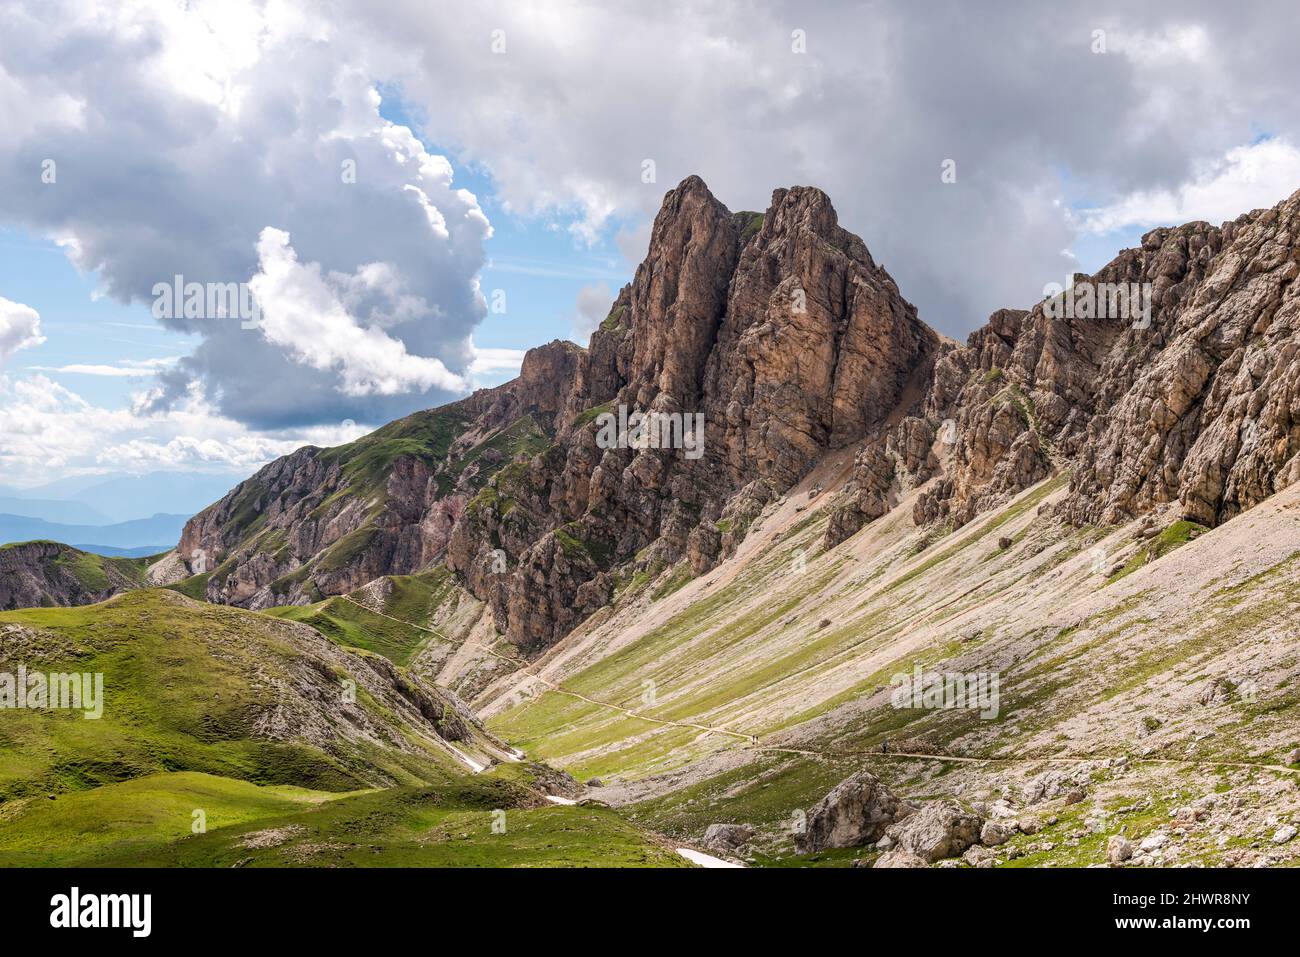 Italia, Alto Adige, nuvole sul paesaggio montagnoso del Parco Naturale dello Sciliar-Rosengarten in estate Foto Stock